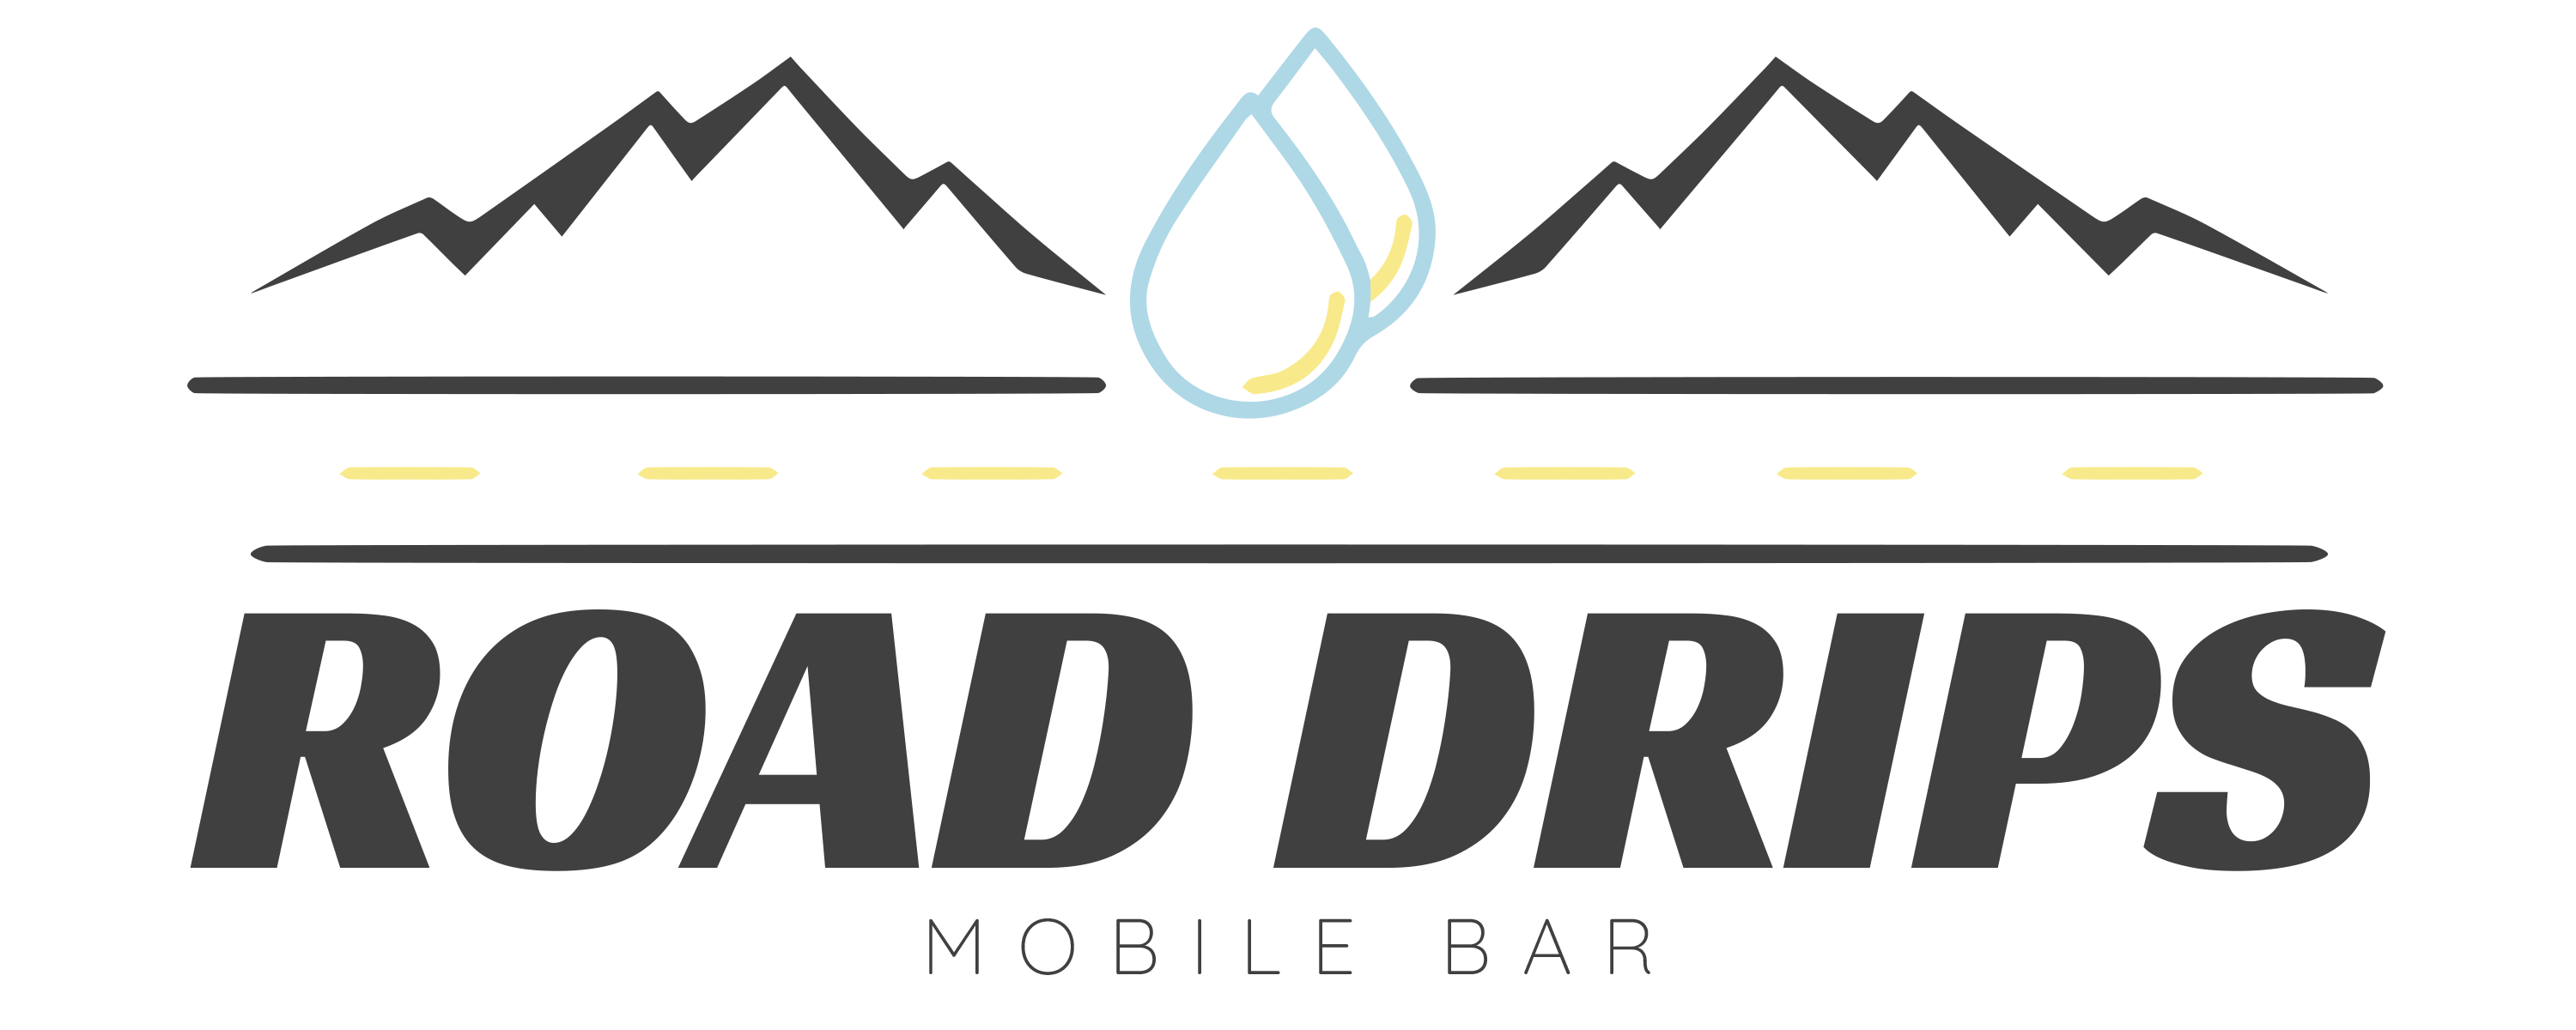 mobile bartender service